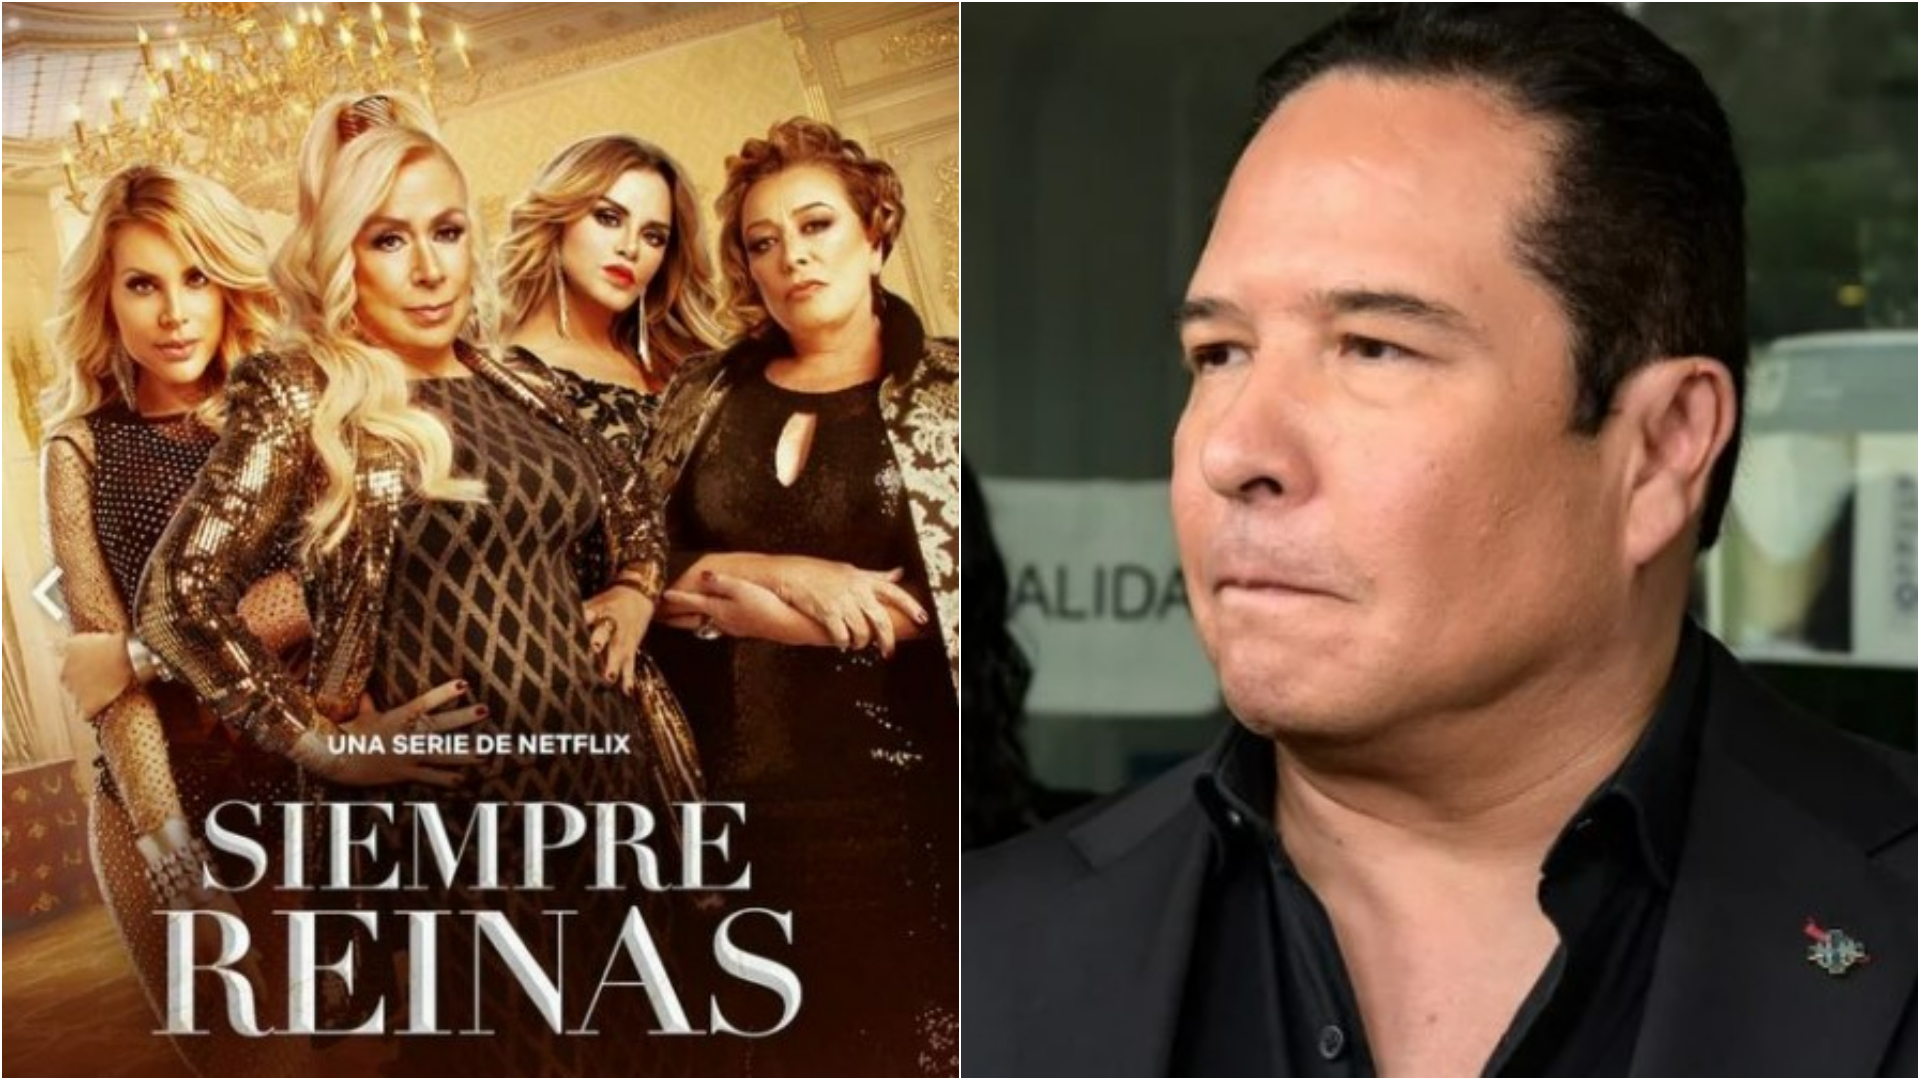 La dura crítica de Gustavo Adolfo Infante al elenco de ‘Siempre Reinas’: “No veo que tengan nada que hacer ahí”